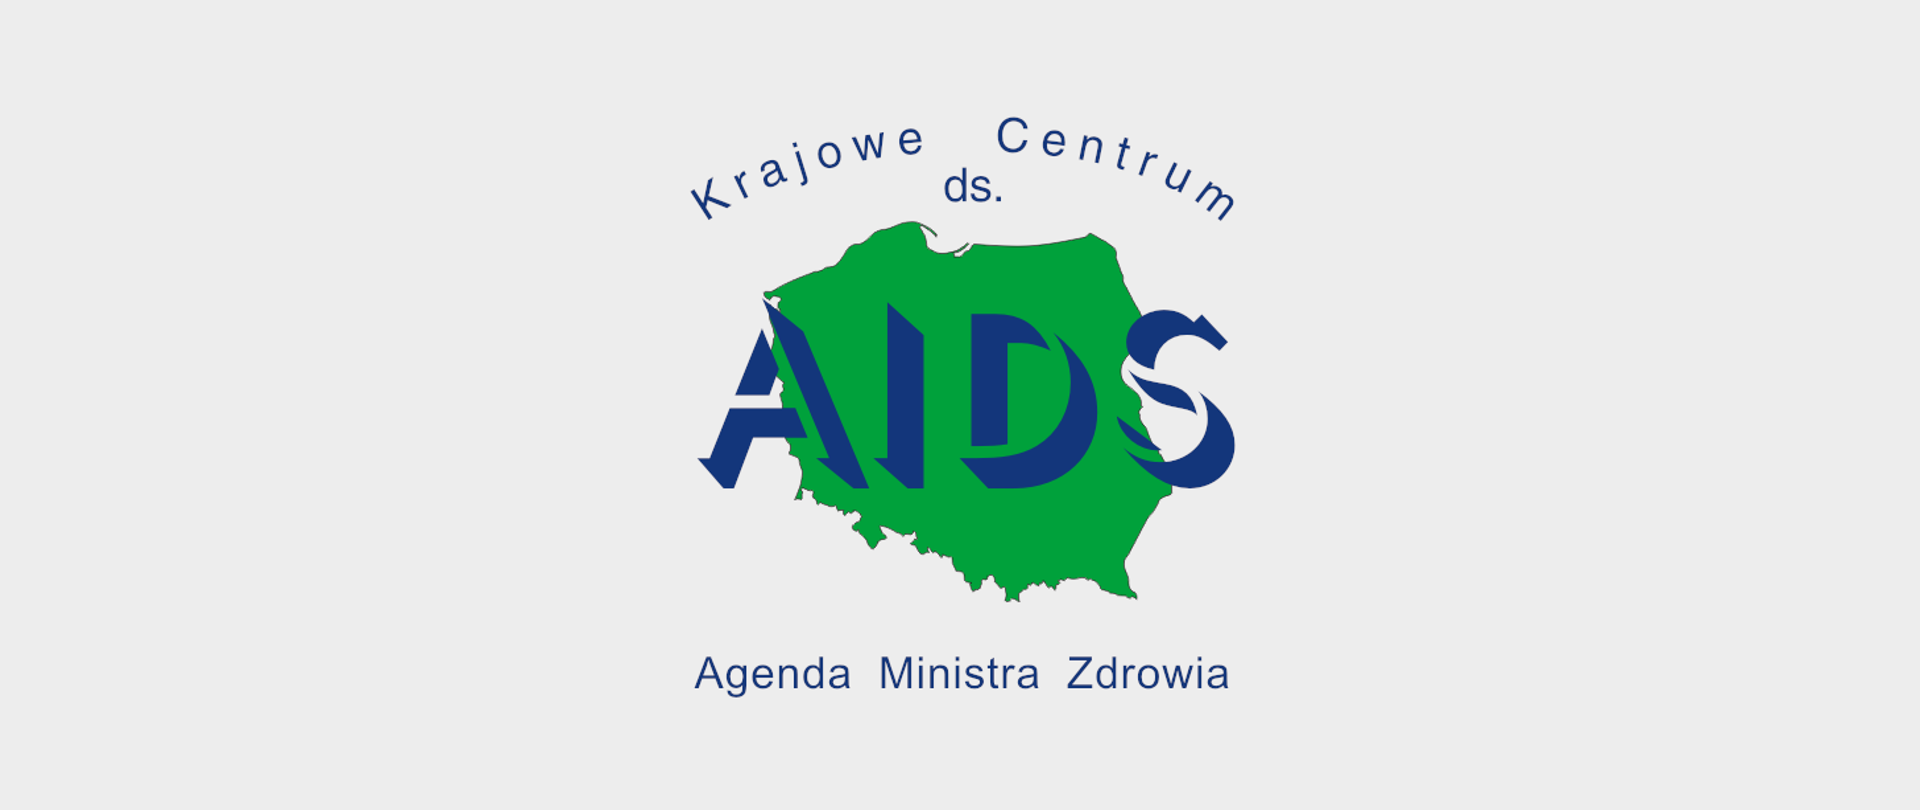 Logo Krajowego Centrum ds. AIDS. Napis AIDS na tle Polski. Mapa wypełniona jest kolorem zielonym.